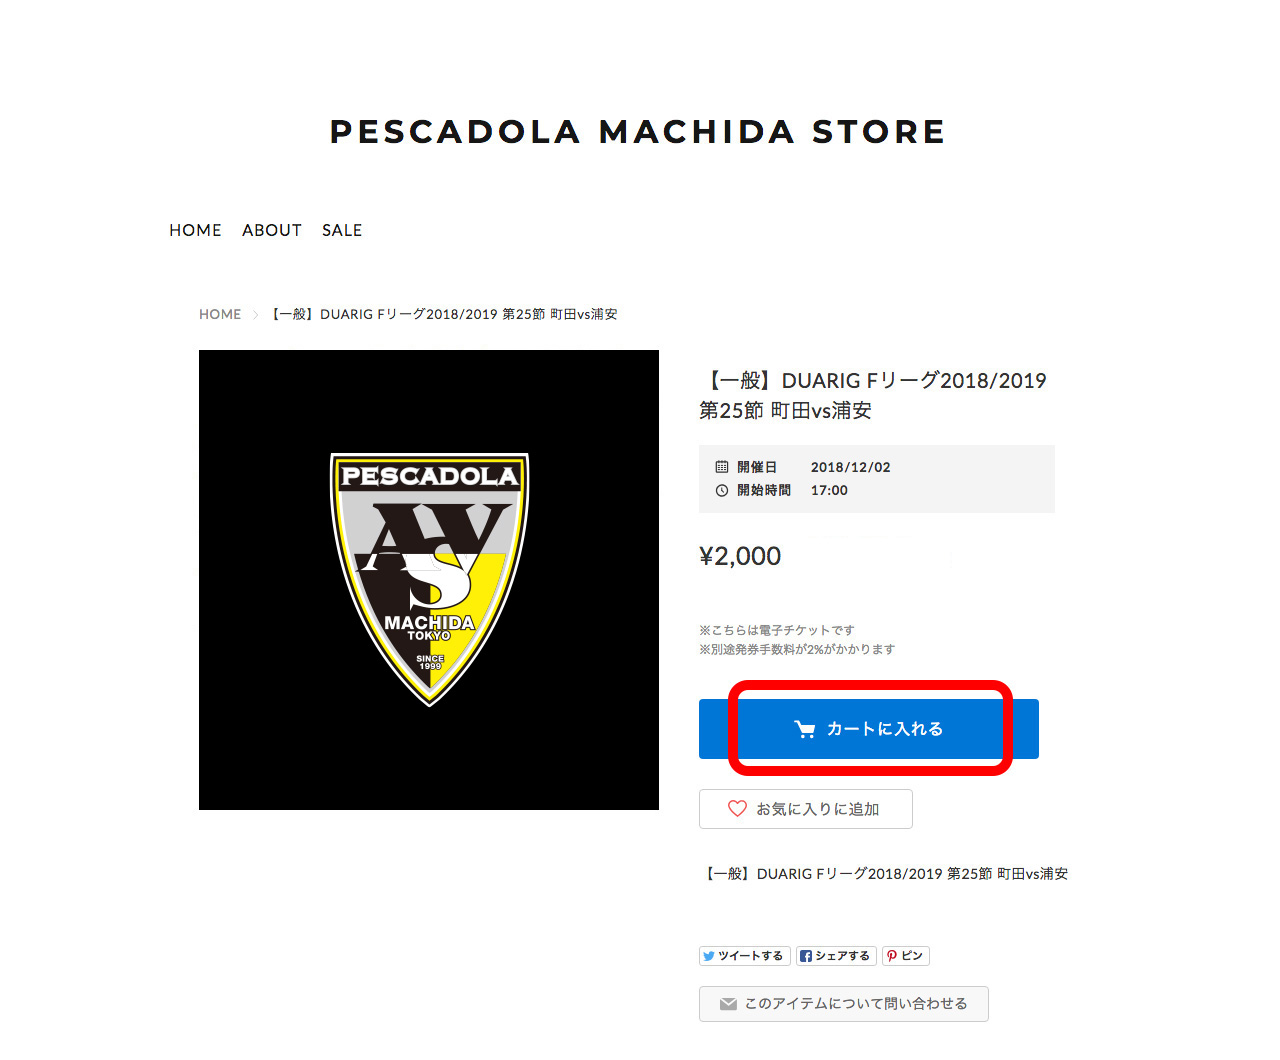 電子チケット購入方法 ペスカドーラ町田 Asv Pescadola Machida Official Site